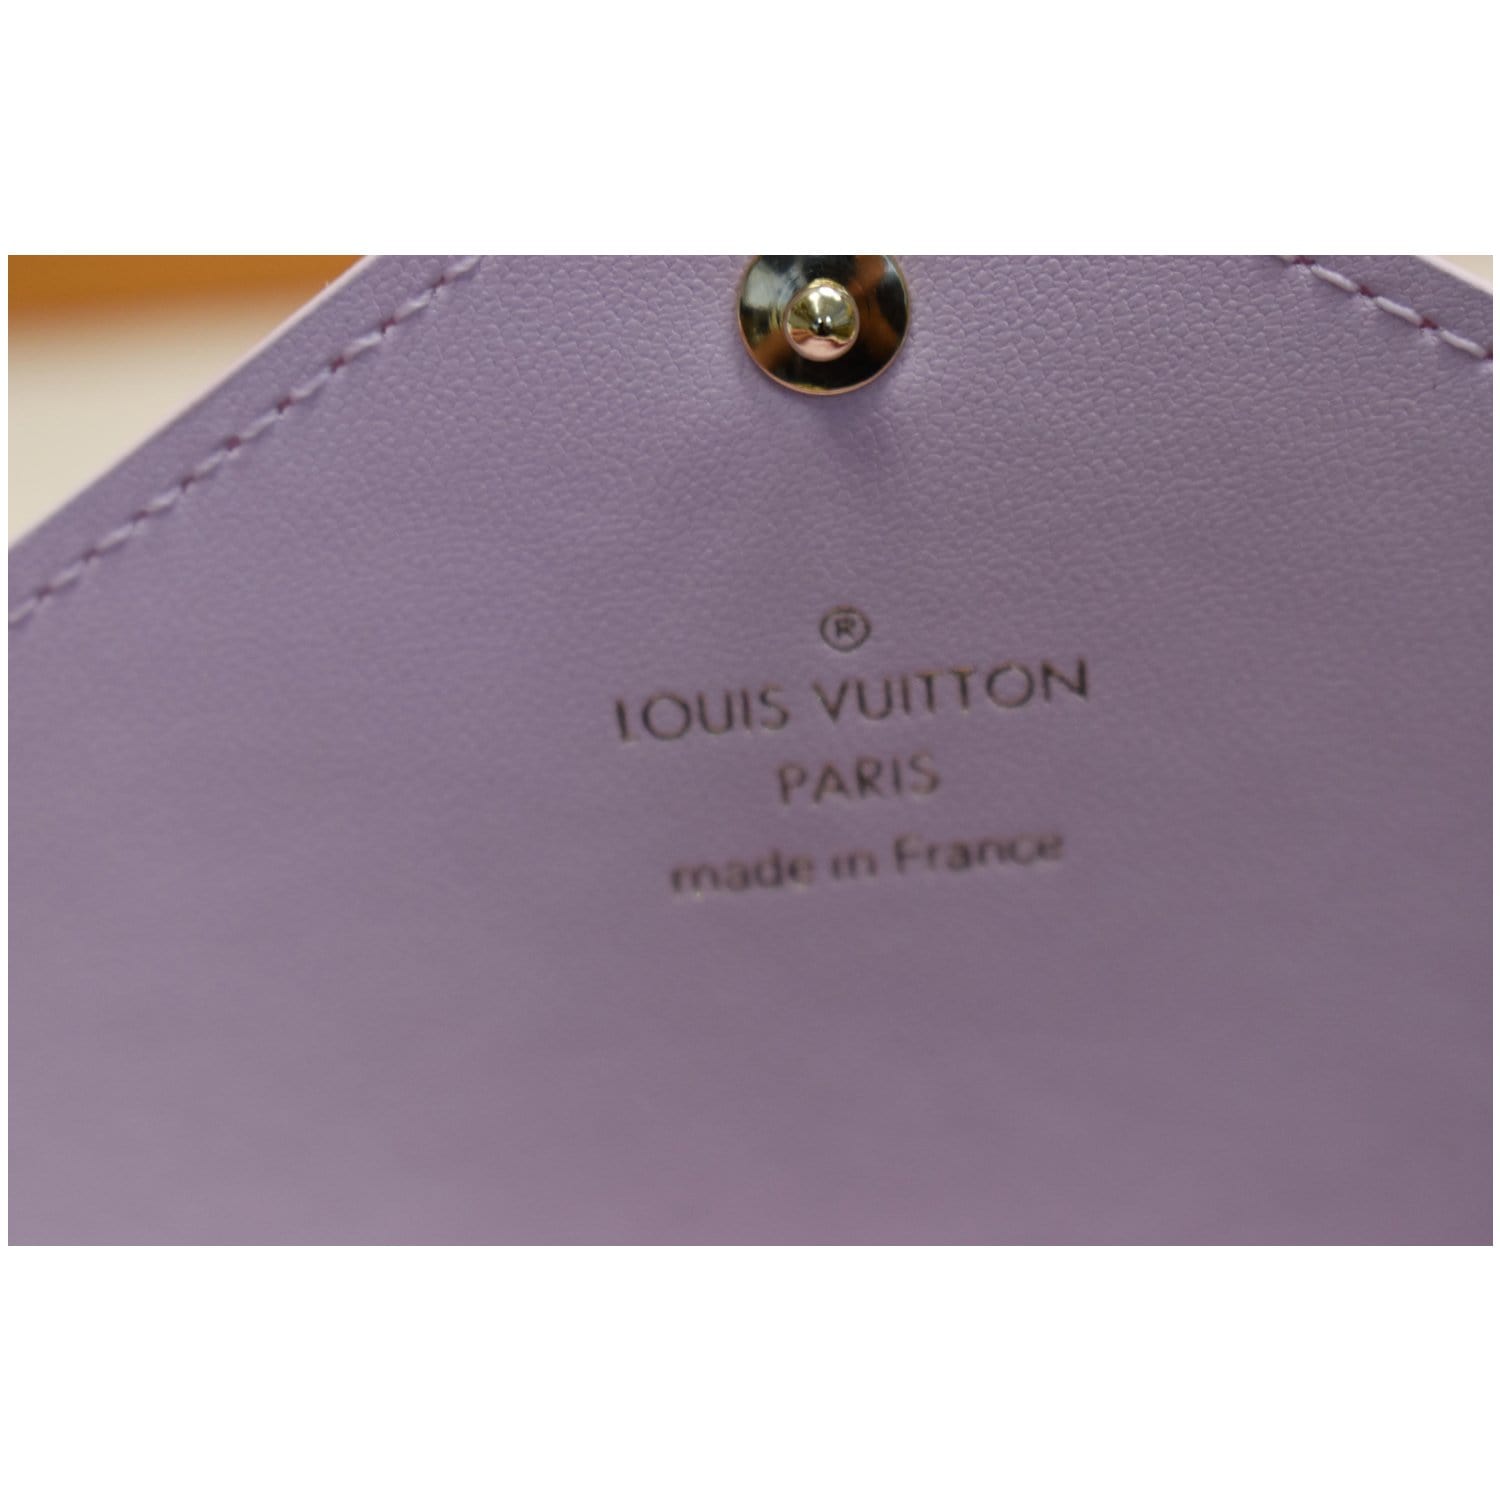 Louis Vuitton Large Pink X Yellow Monogram Kirigami Gm Envelop Pouch 19lvs421